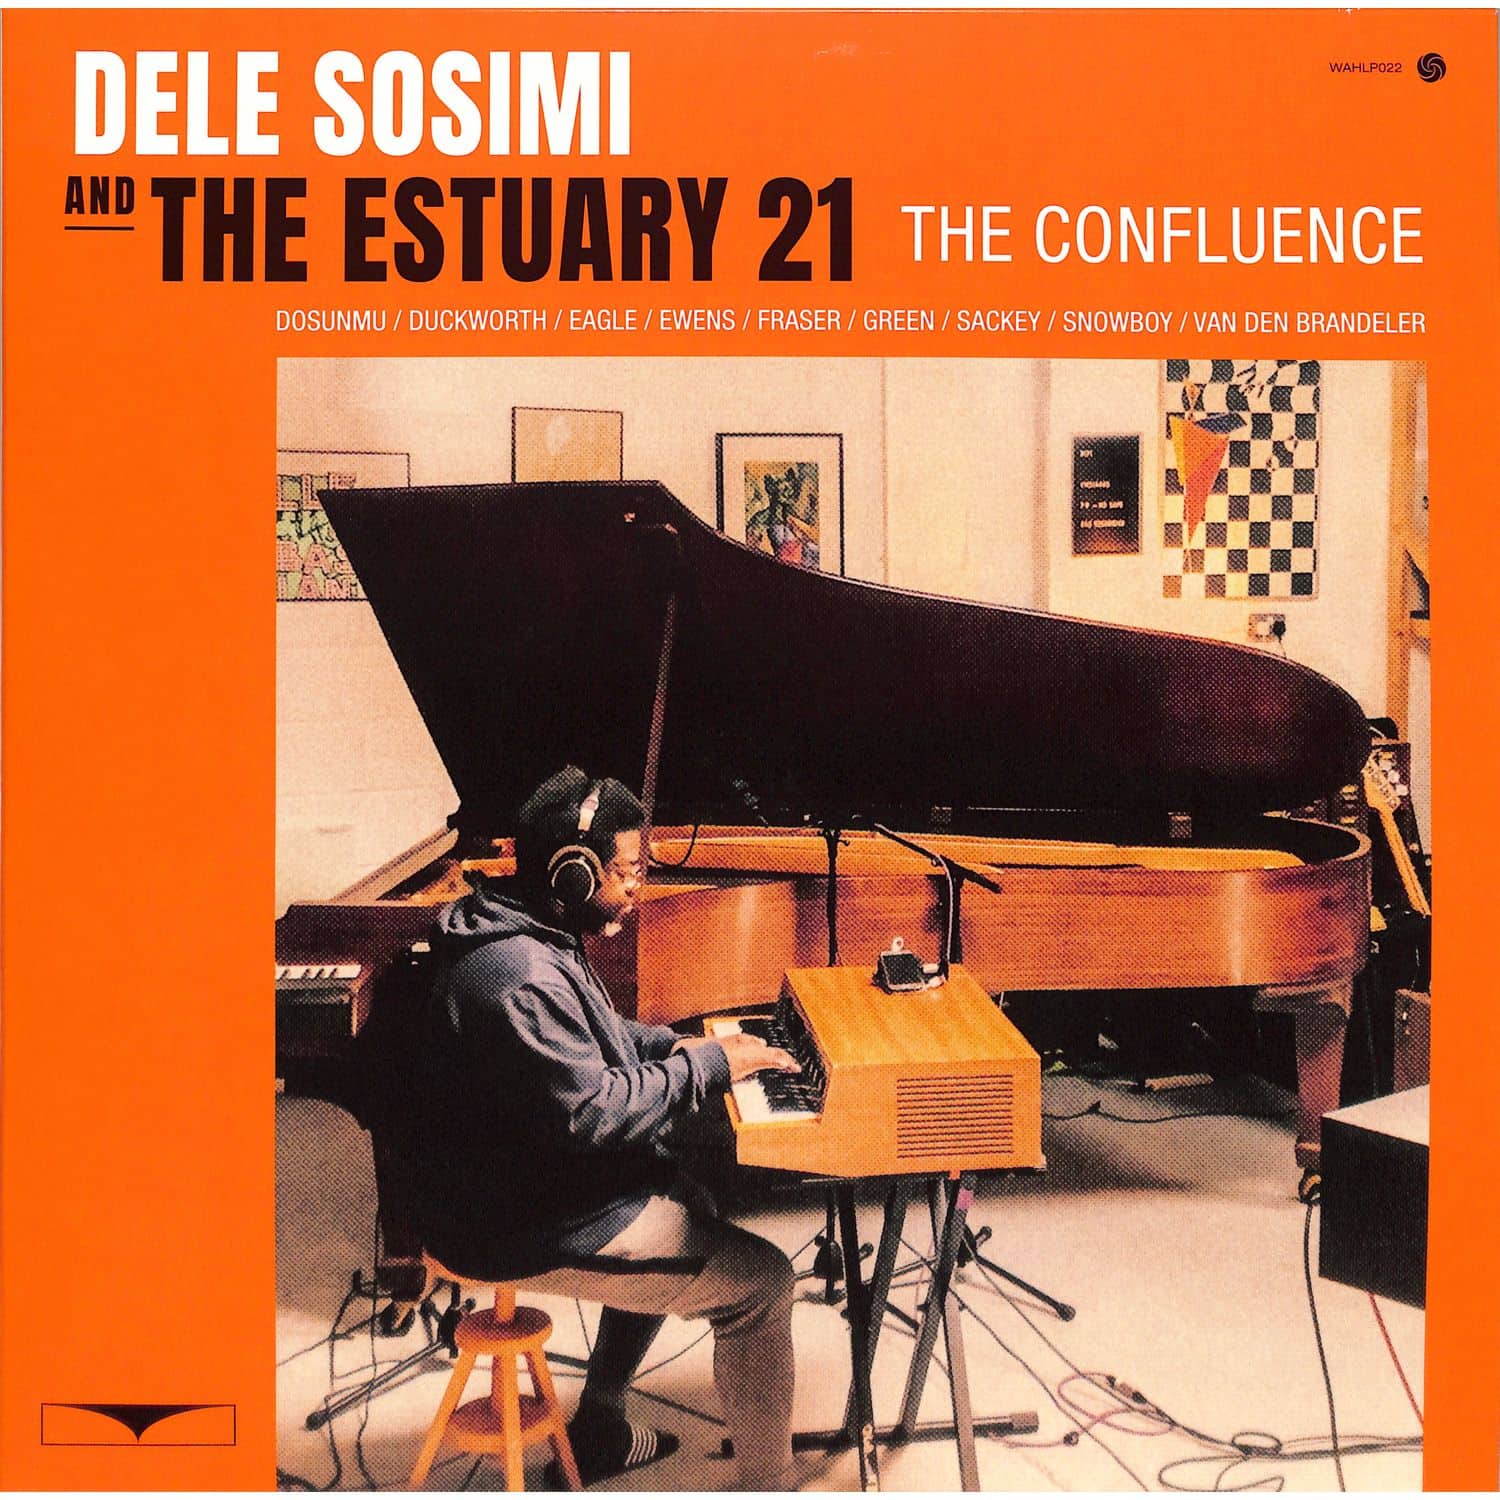 Dele Sosimi & The Estuary 21 - THE CONFLUENCE 